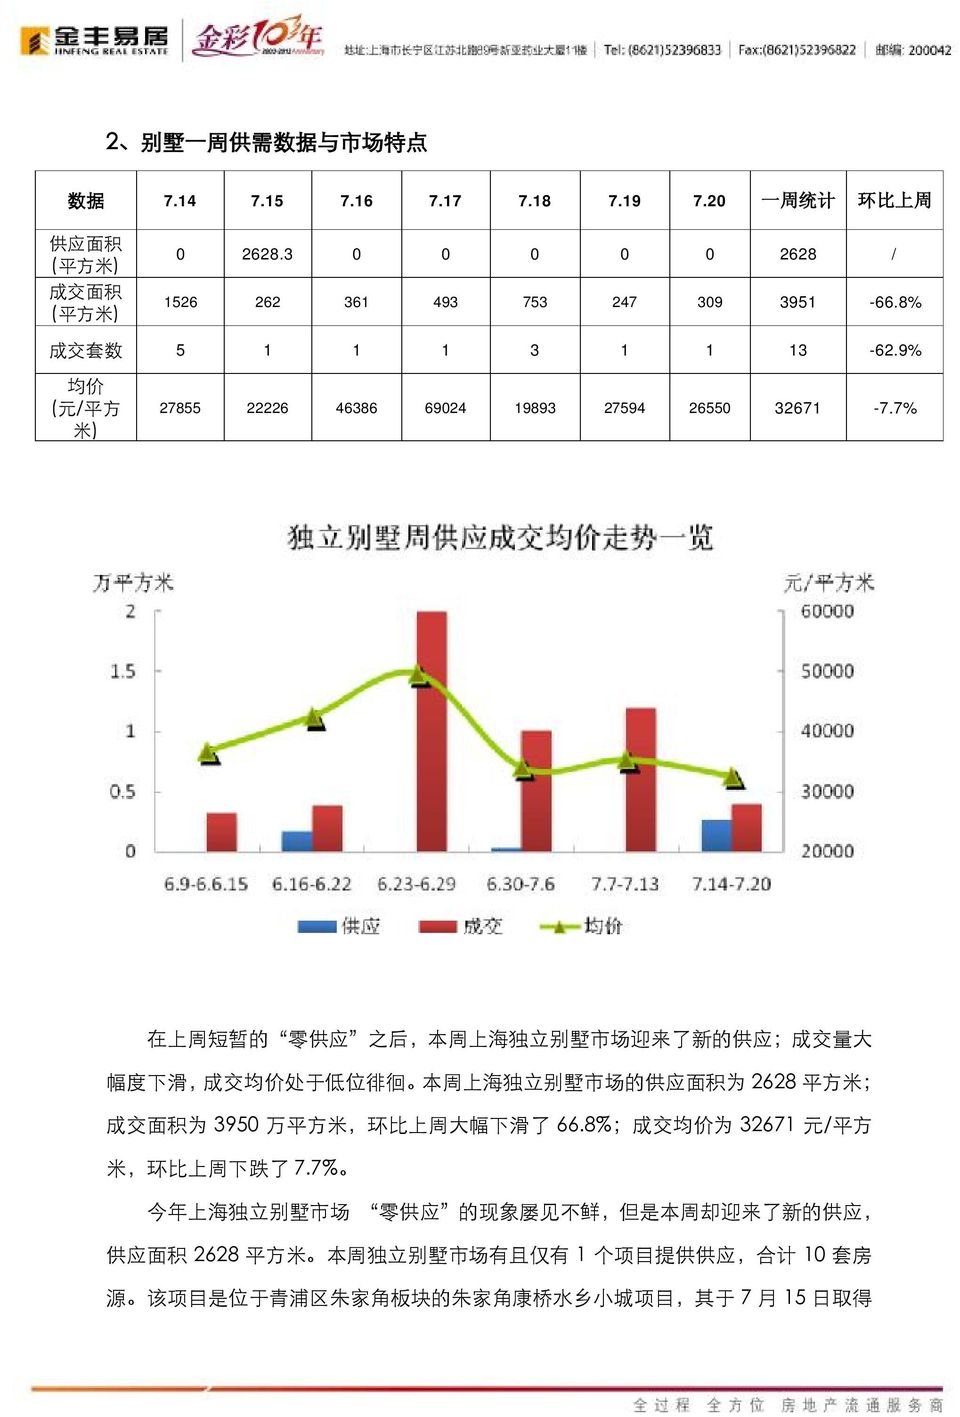 7% 在 上 周 短 暂 的 零 供 应 之 后, 本 周 上 海 独 立 别 墅 市 场 迎 来 了 新 的 供 应 ; 成 交 量 大 幅 度 下 滑, 成 交 均 价 处 于 低 位 徘 徊 本 周 上 海 独 立 别 墅 市 场 的 供 应 面 积 为 2628 平 方 米 ; 为 3950 万 平 方 米, 环 比 上 周 大 幅 下